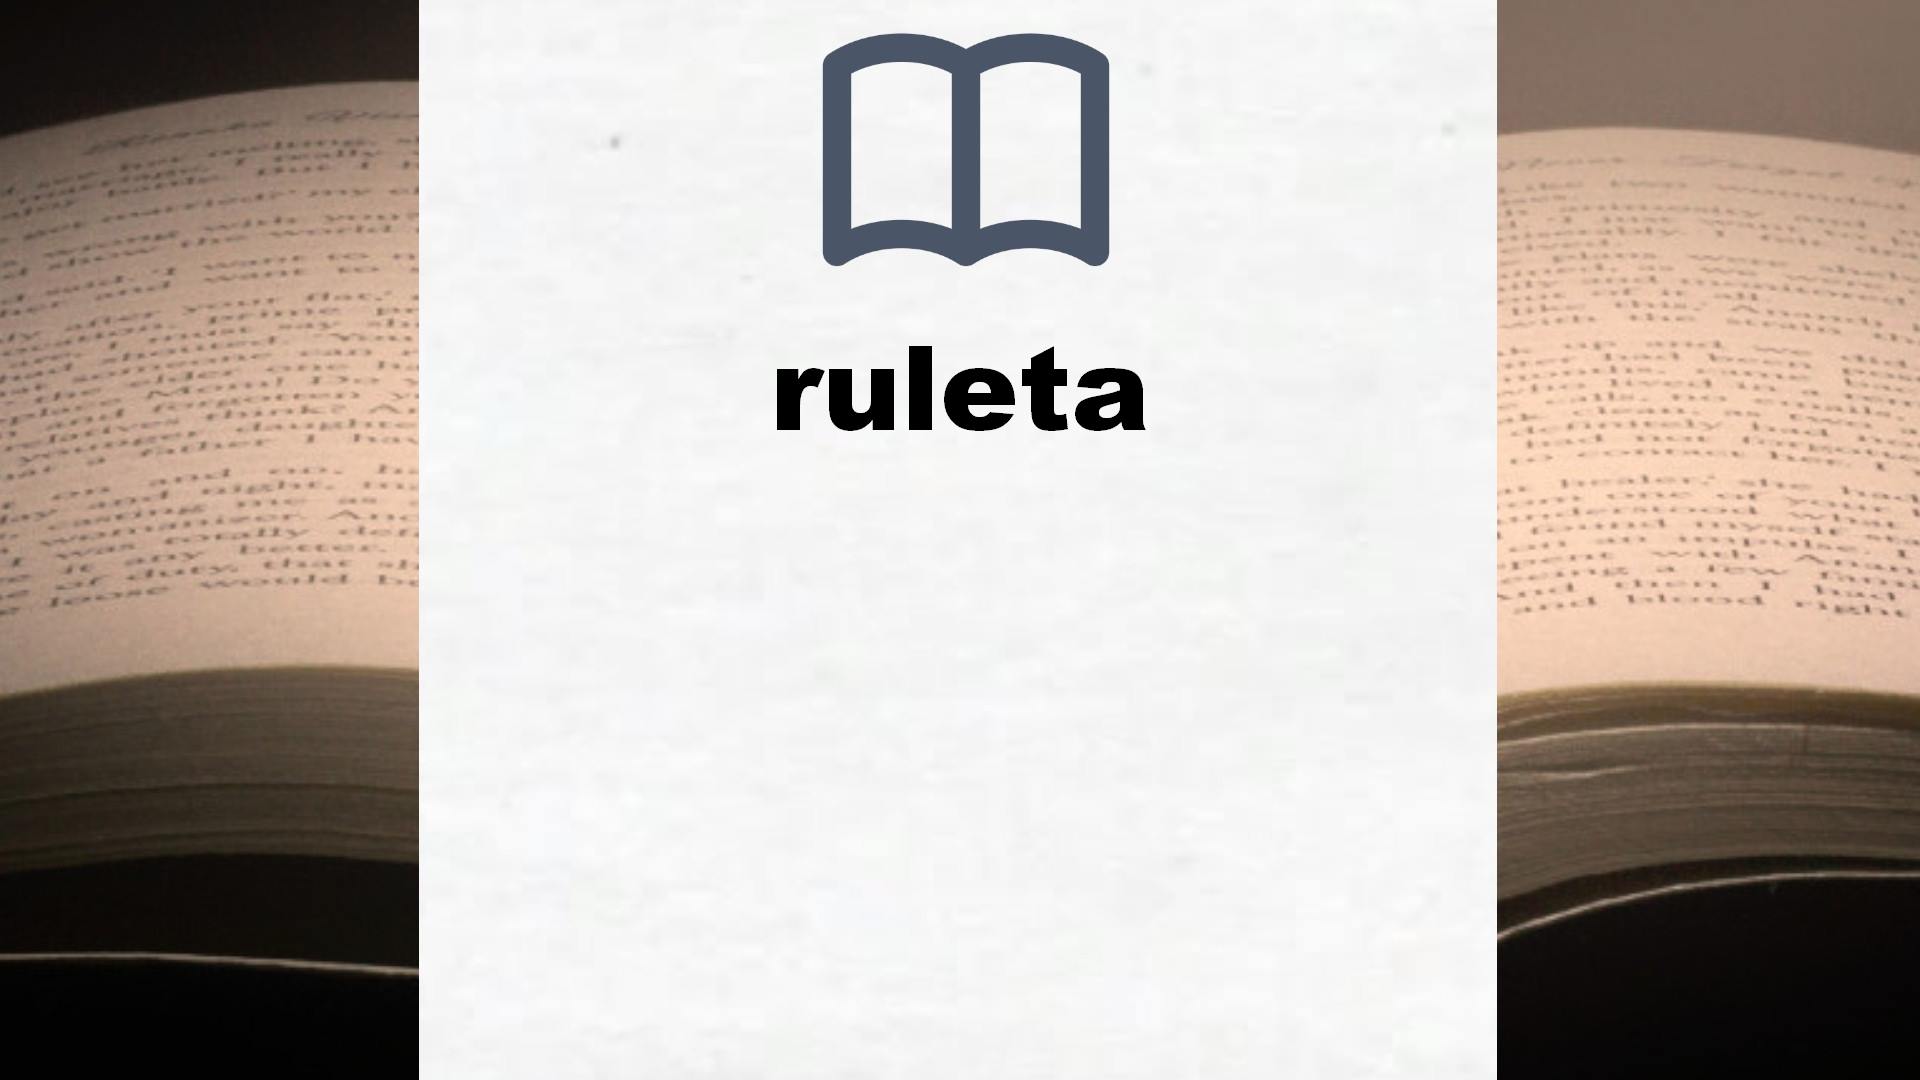 Libros sobre ruleta